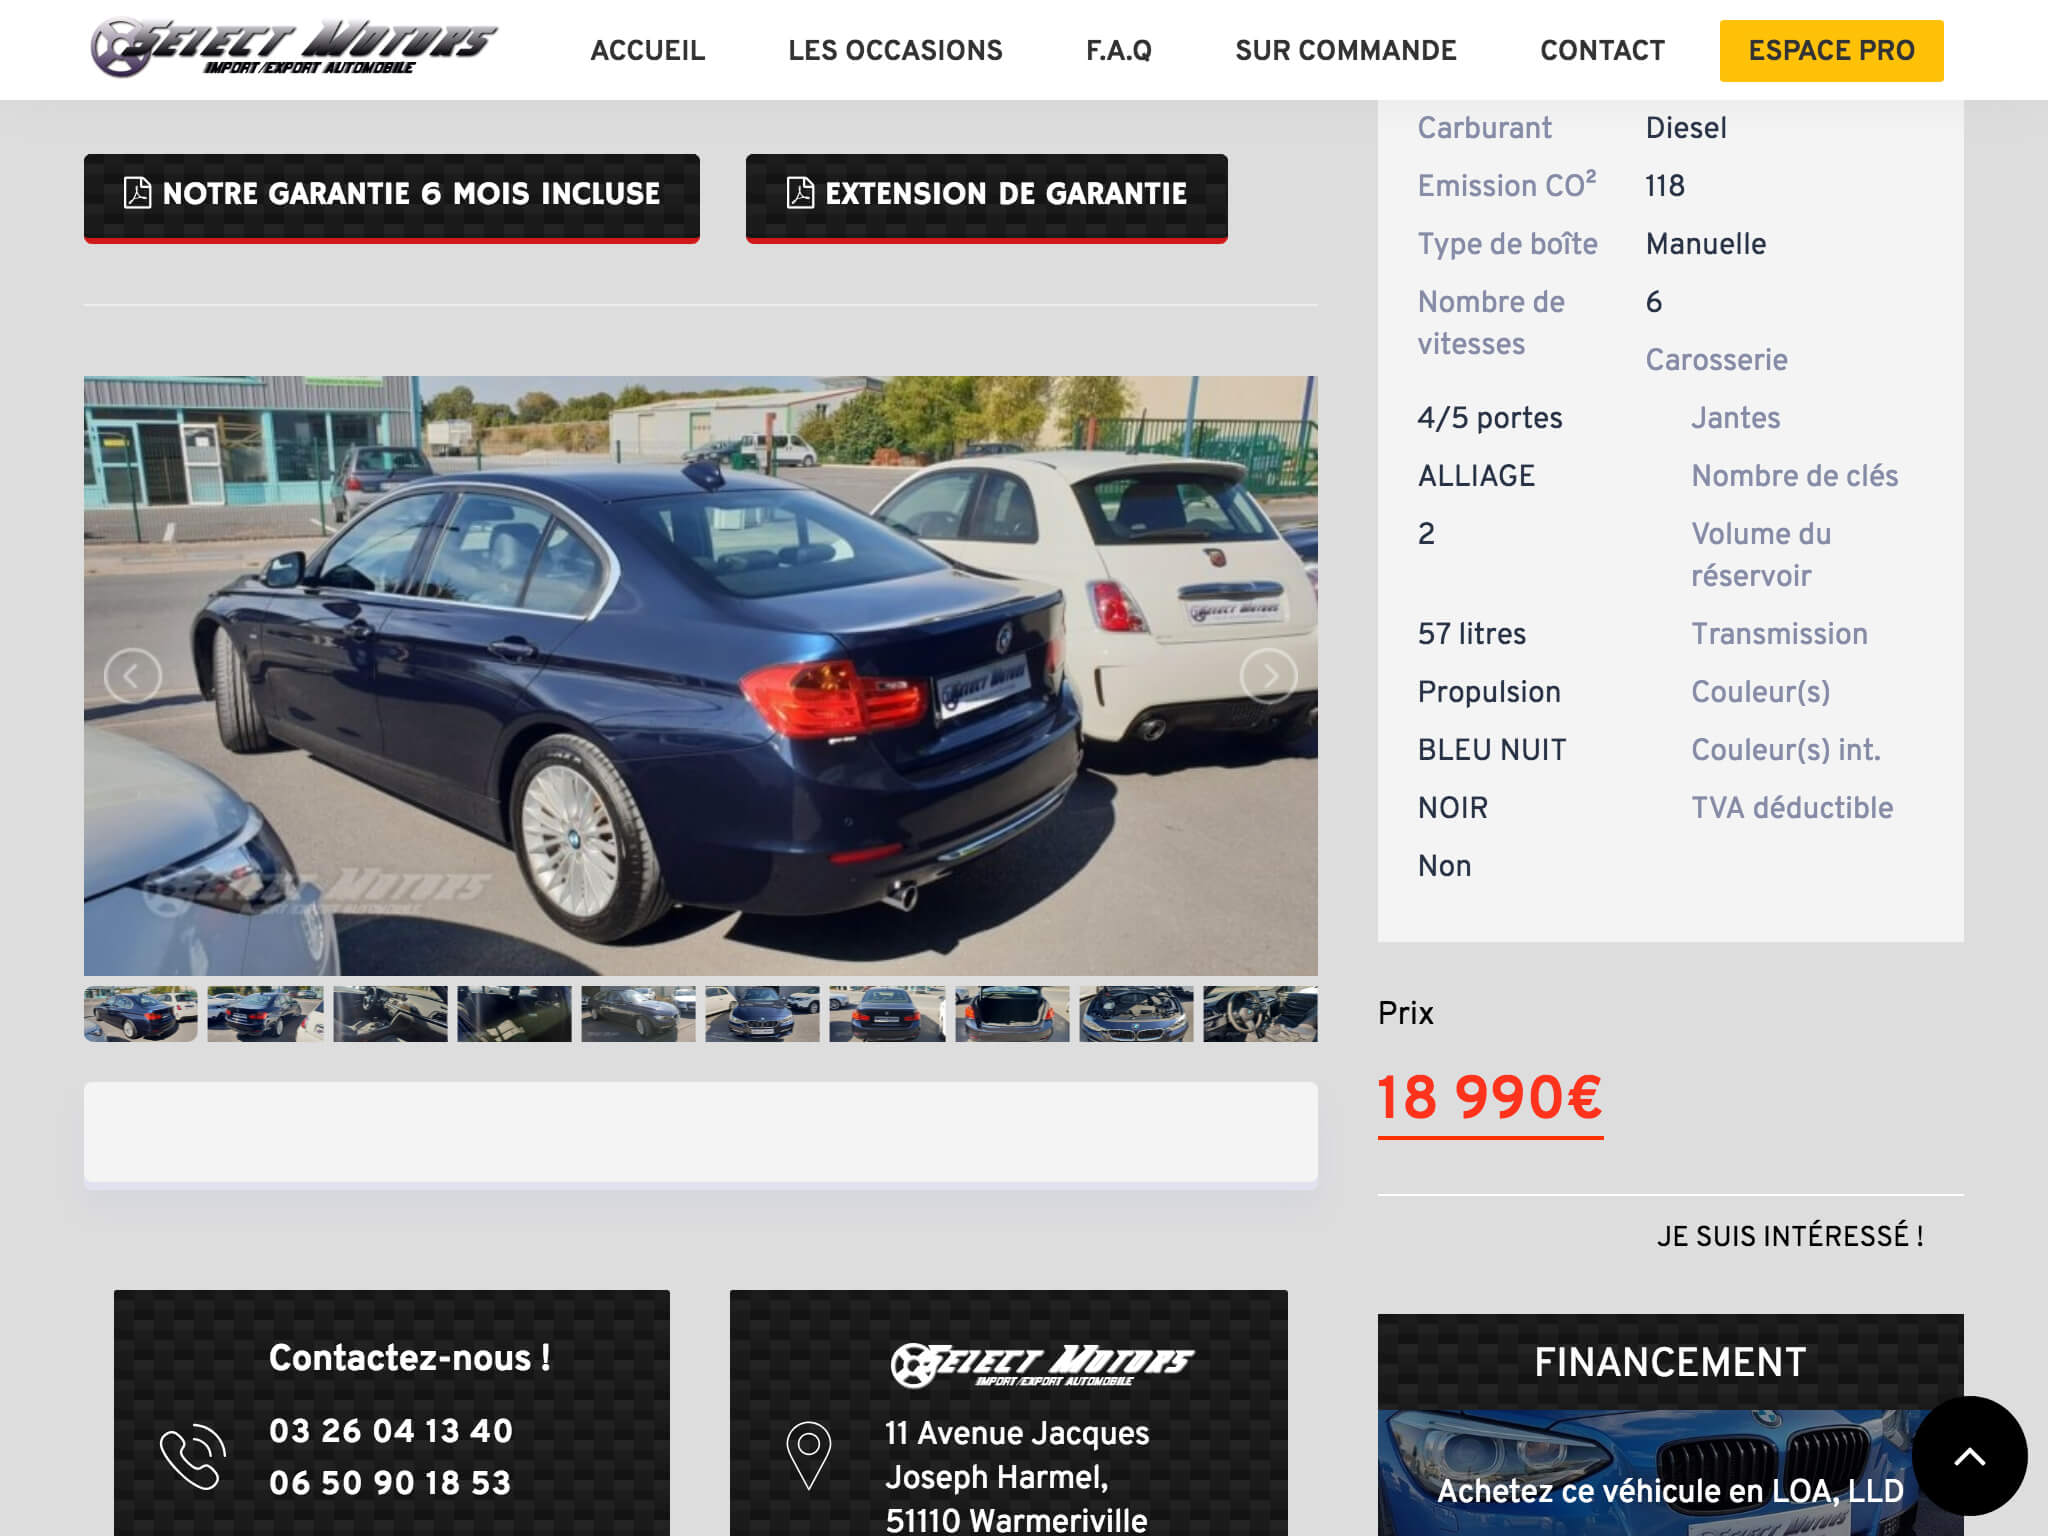 Capture d'écran du site internet Select Motors sur iPad réalisé par Kevin de Sousa